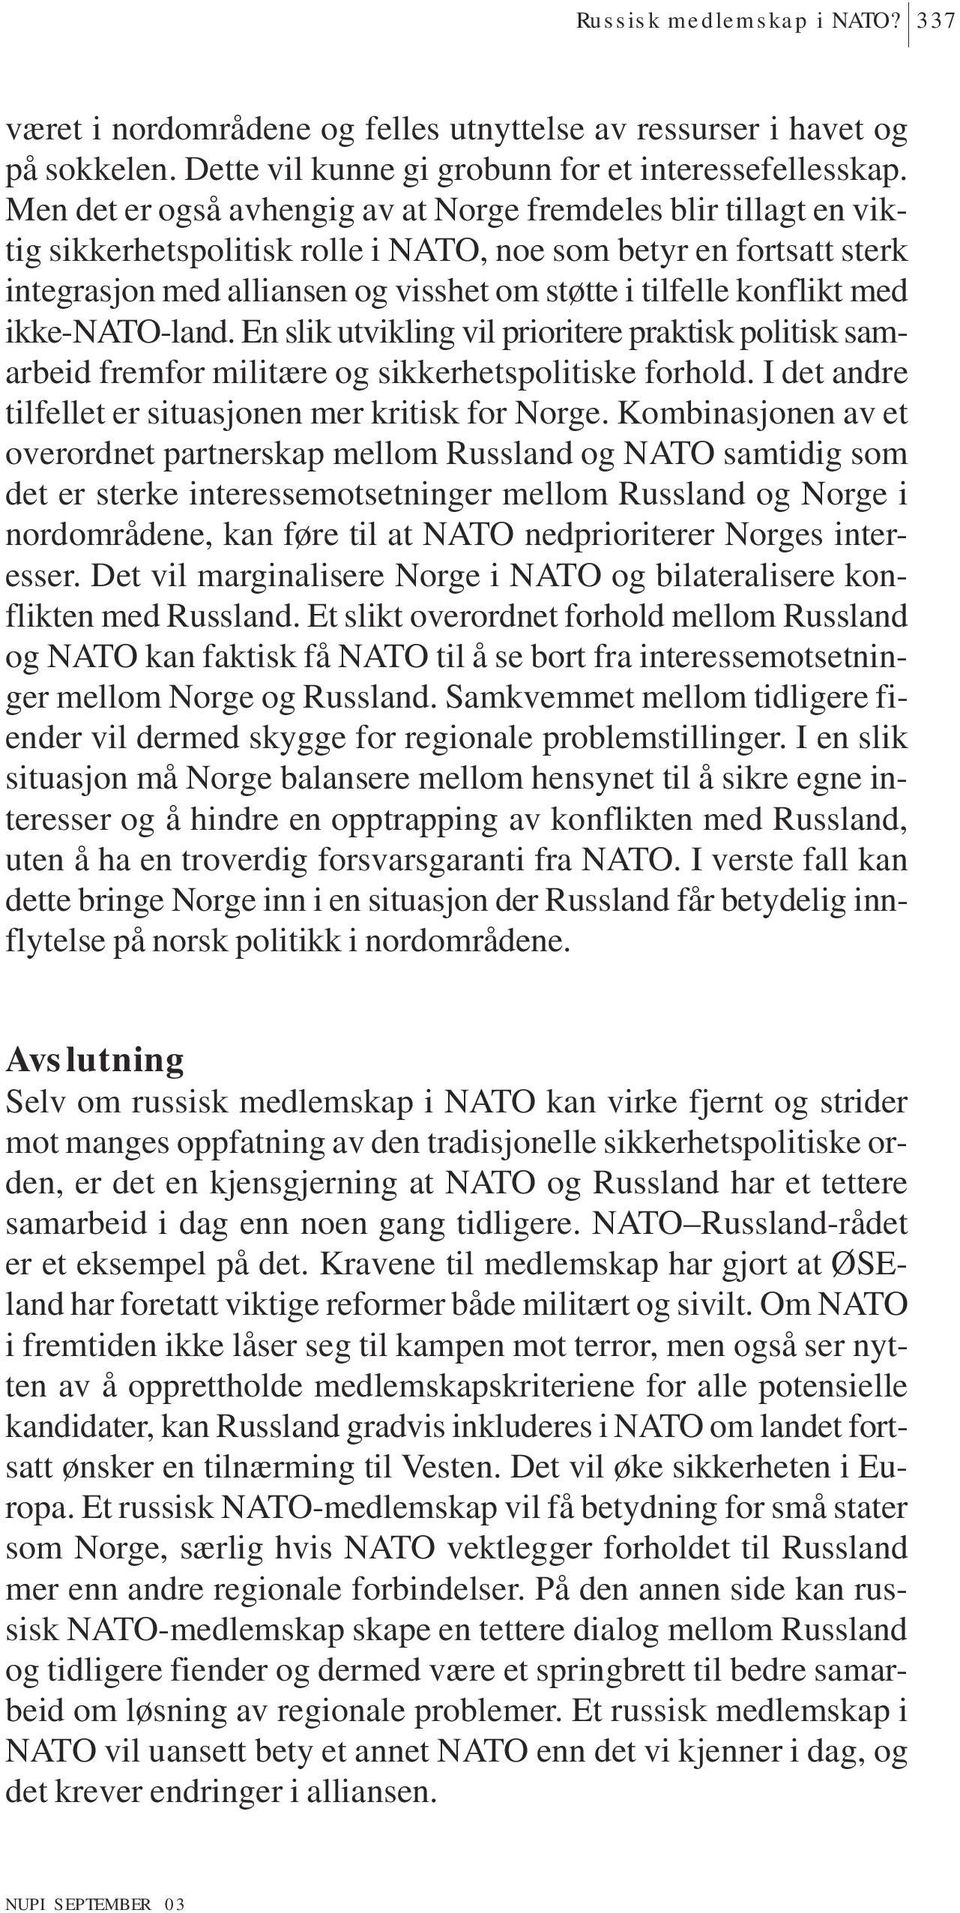 konflikt med ikke-nato-land. En slik utvikling vil prioritere praktisk politisk samarbeid fremfor militære og sikkerhetspolitiske forhold. I det andre tilfellet er situasjonen mer kritisk for Norge.